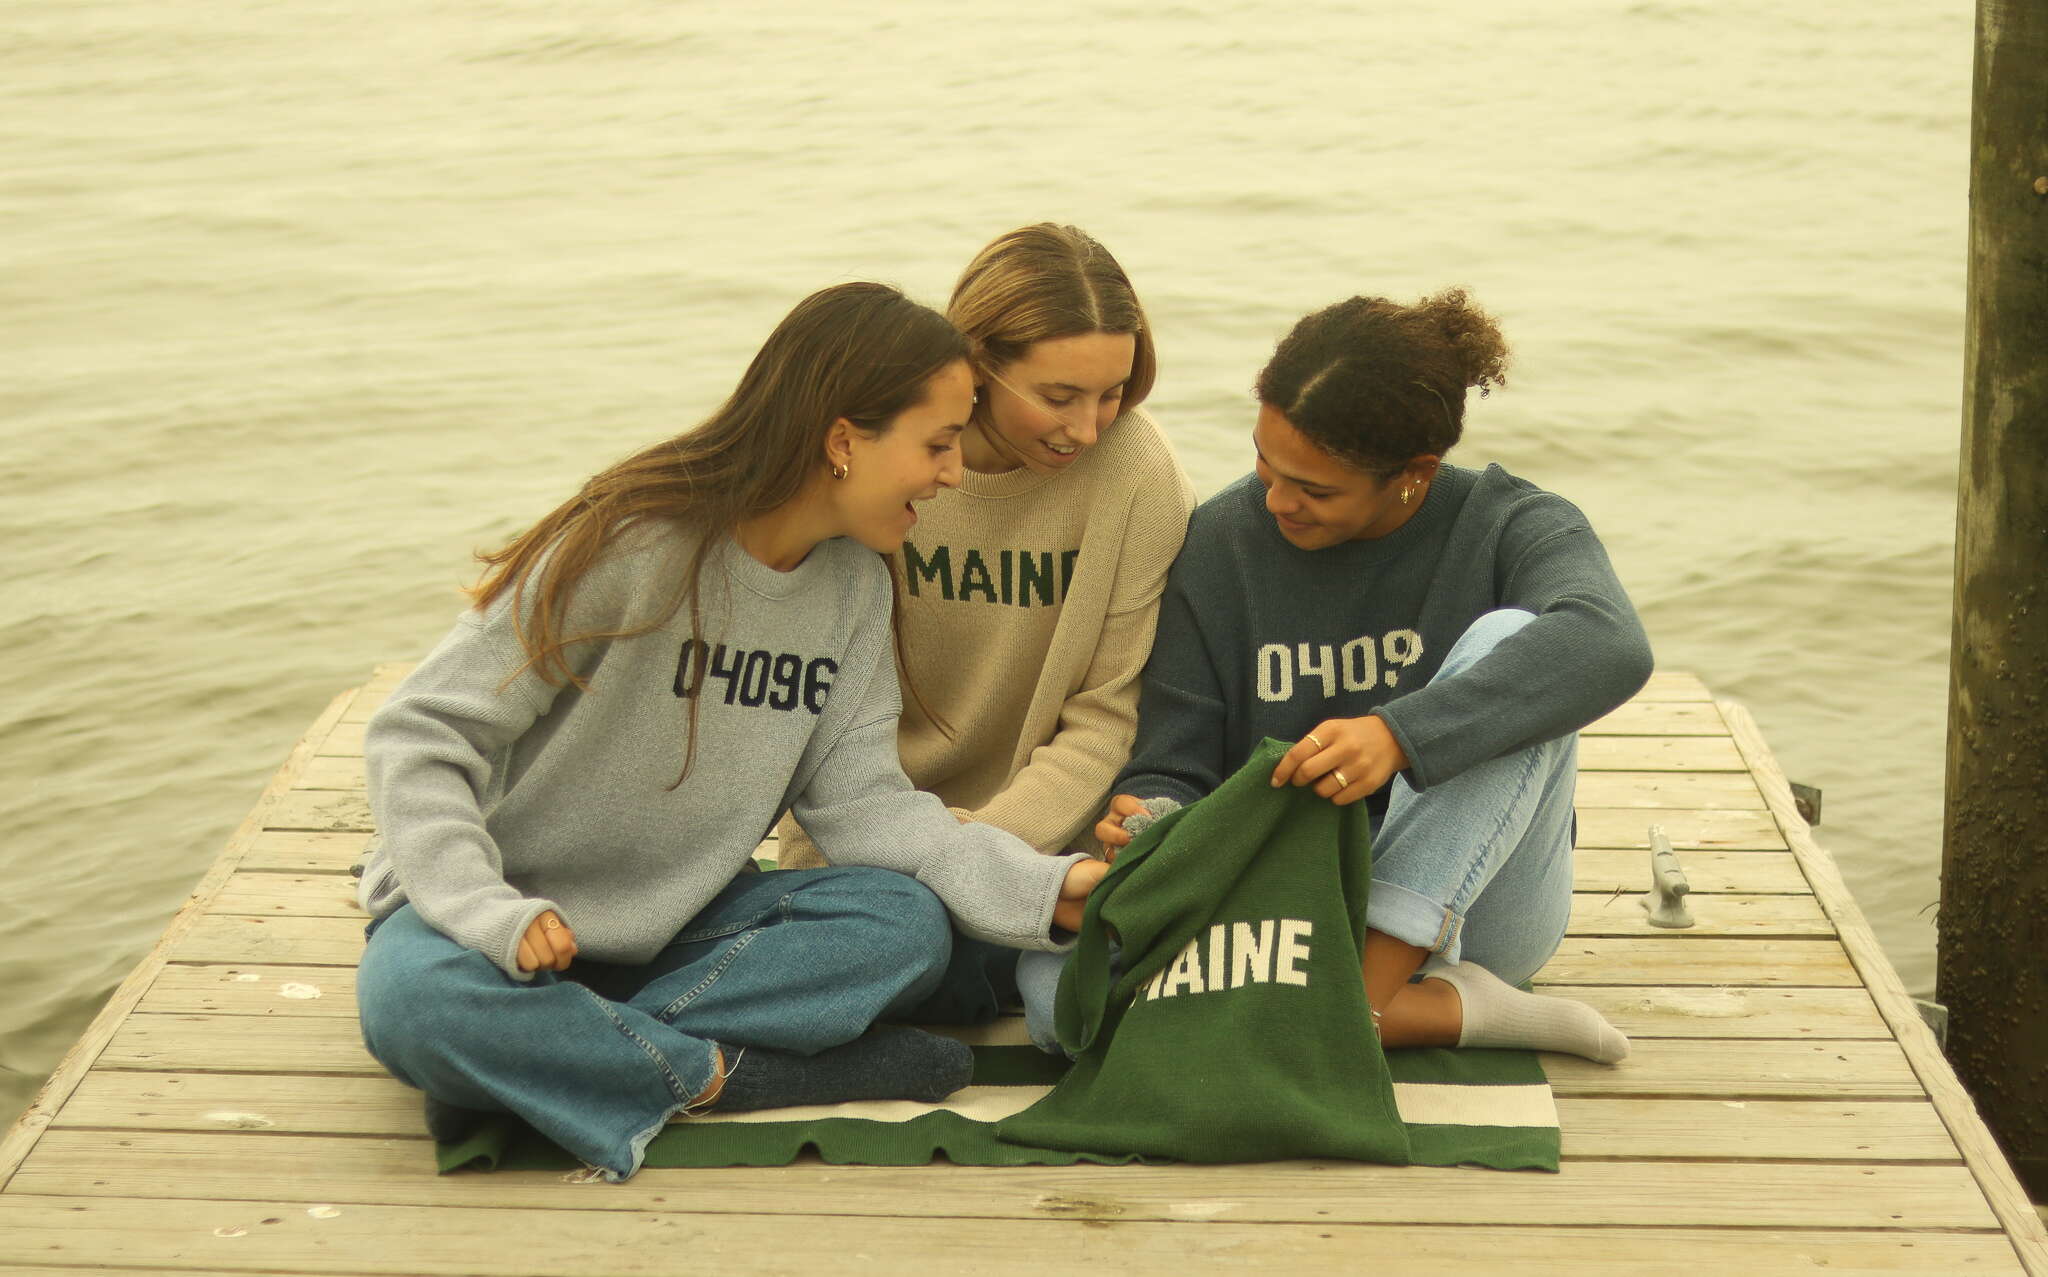 3 people on dock wearing sweatshirts